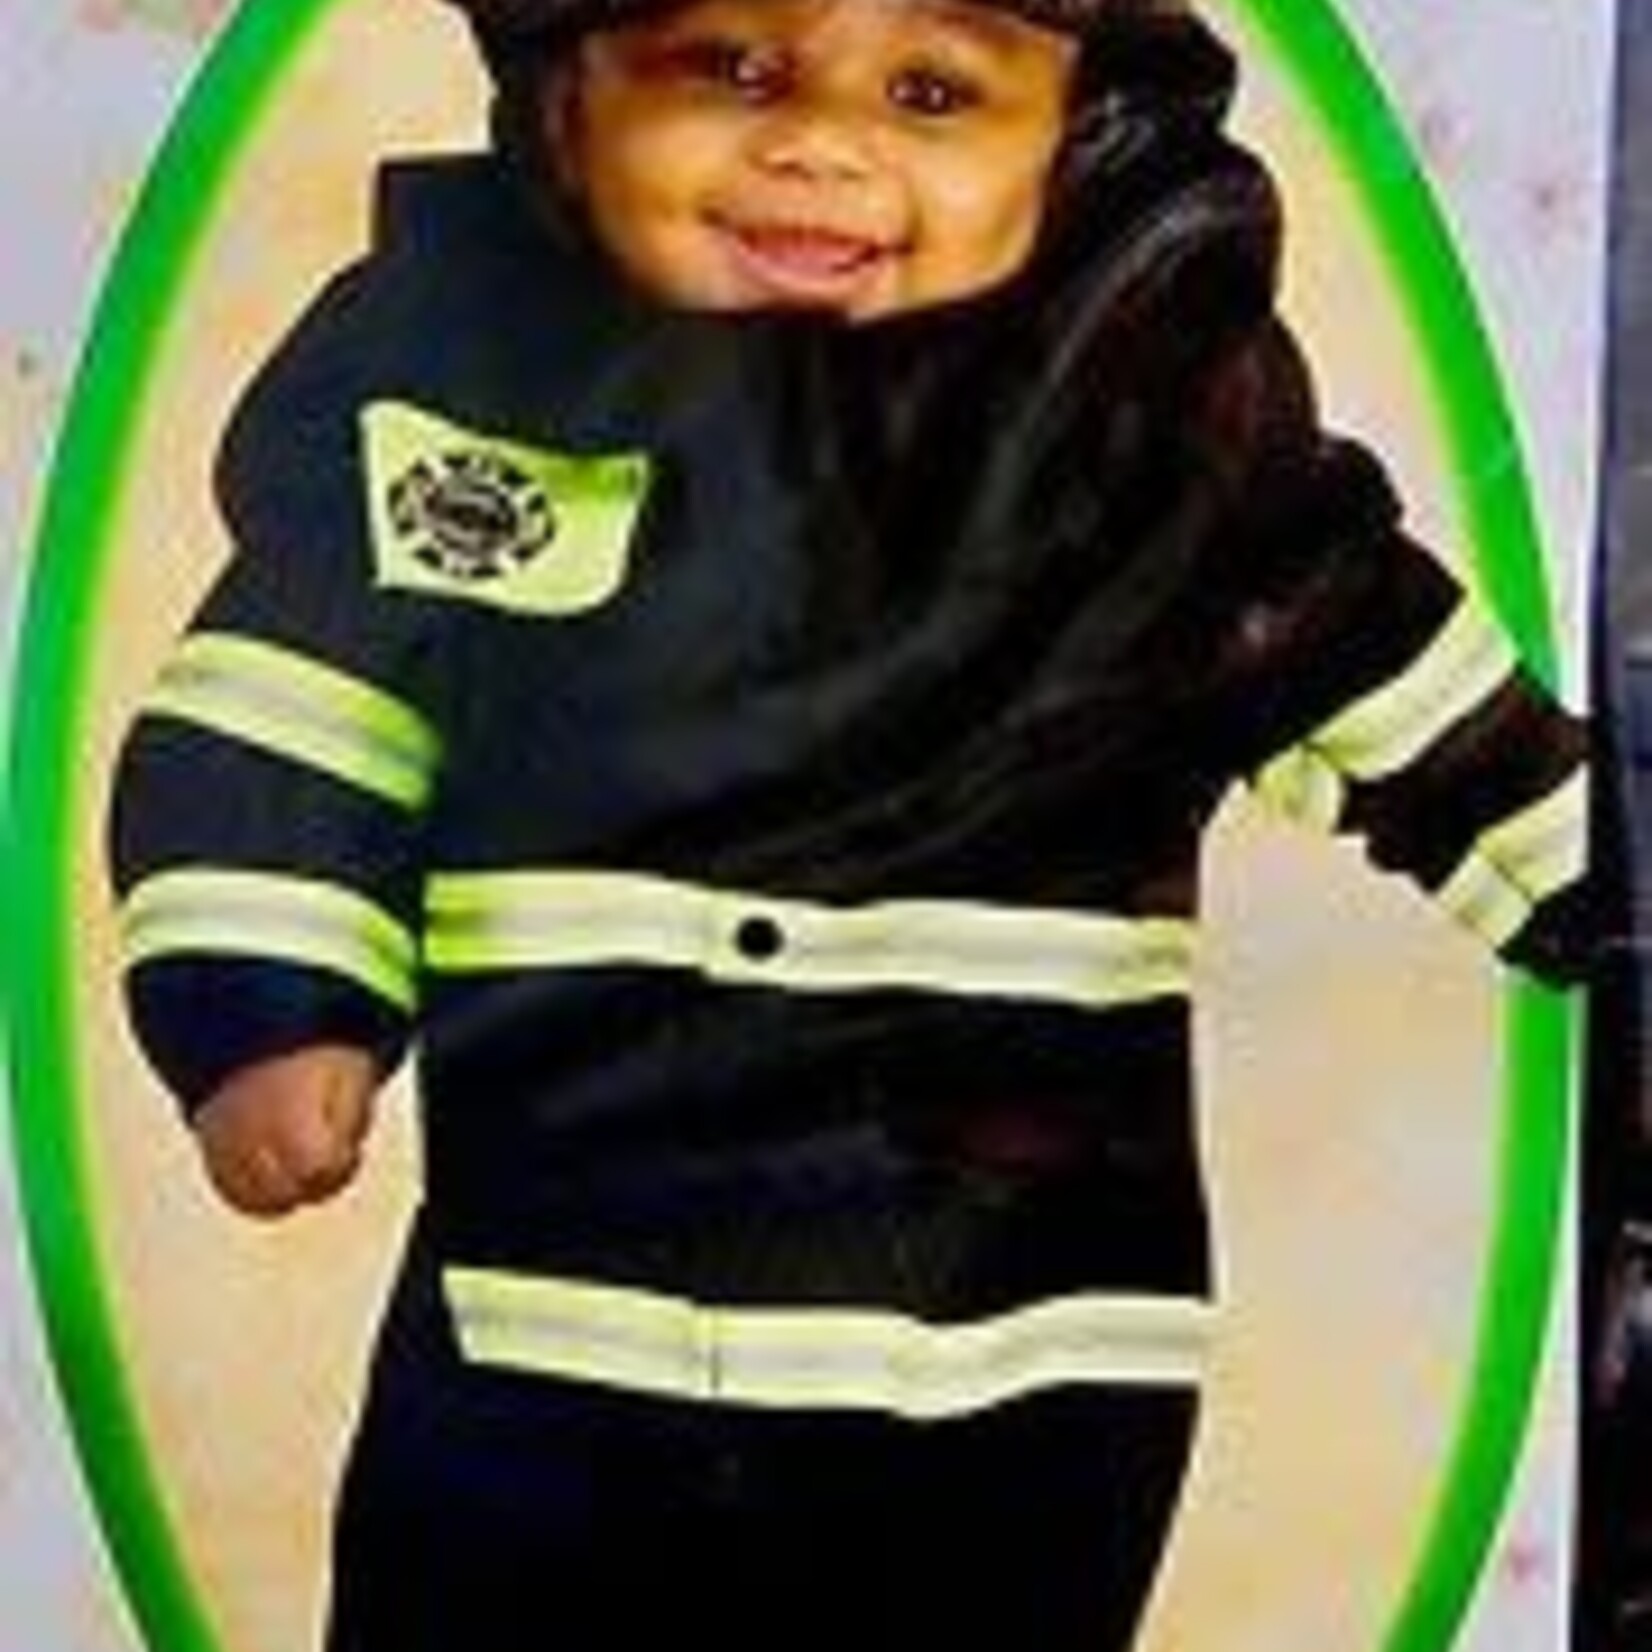 Firefighter Newborn